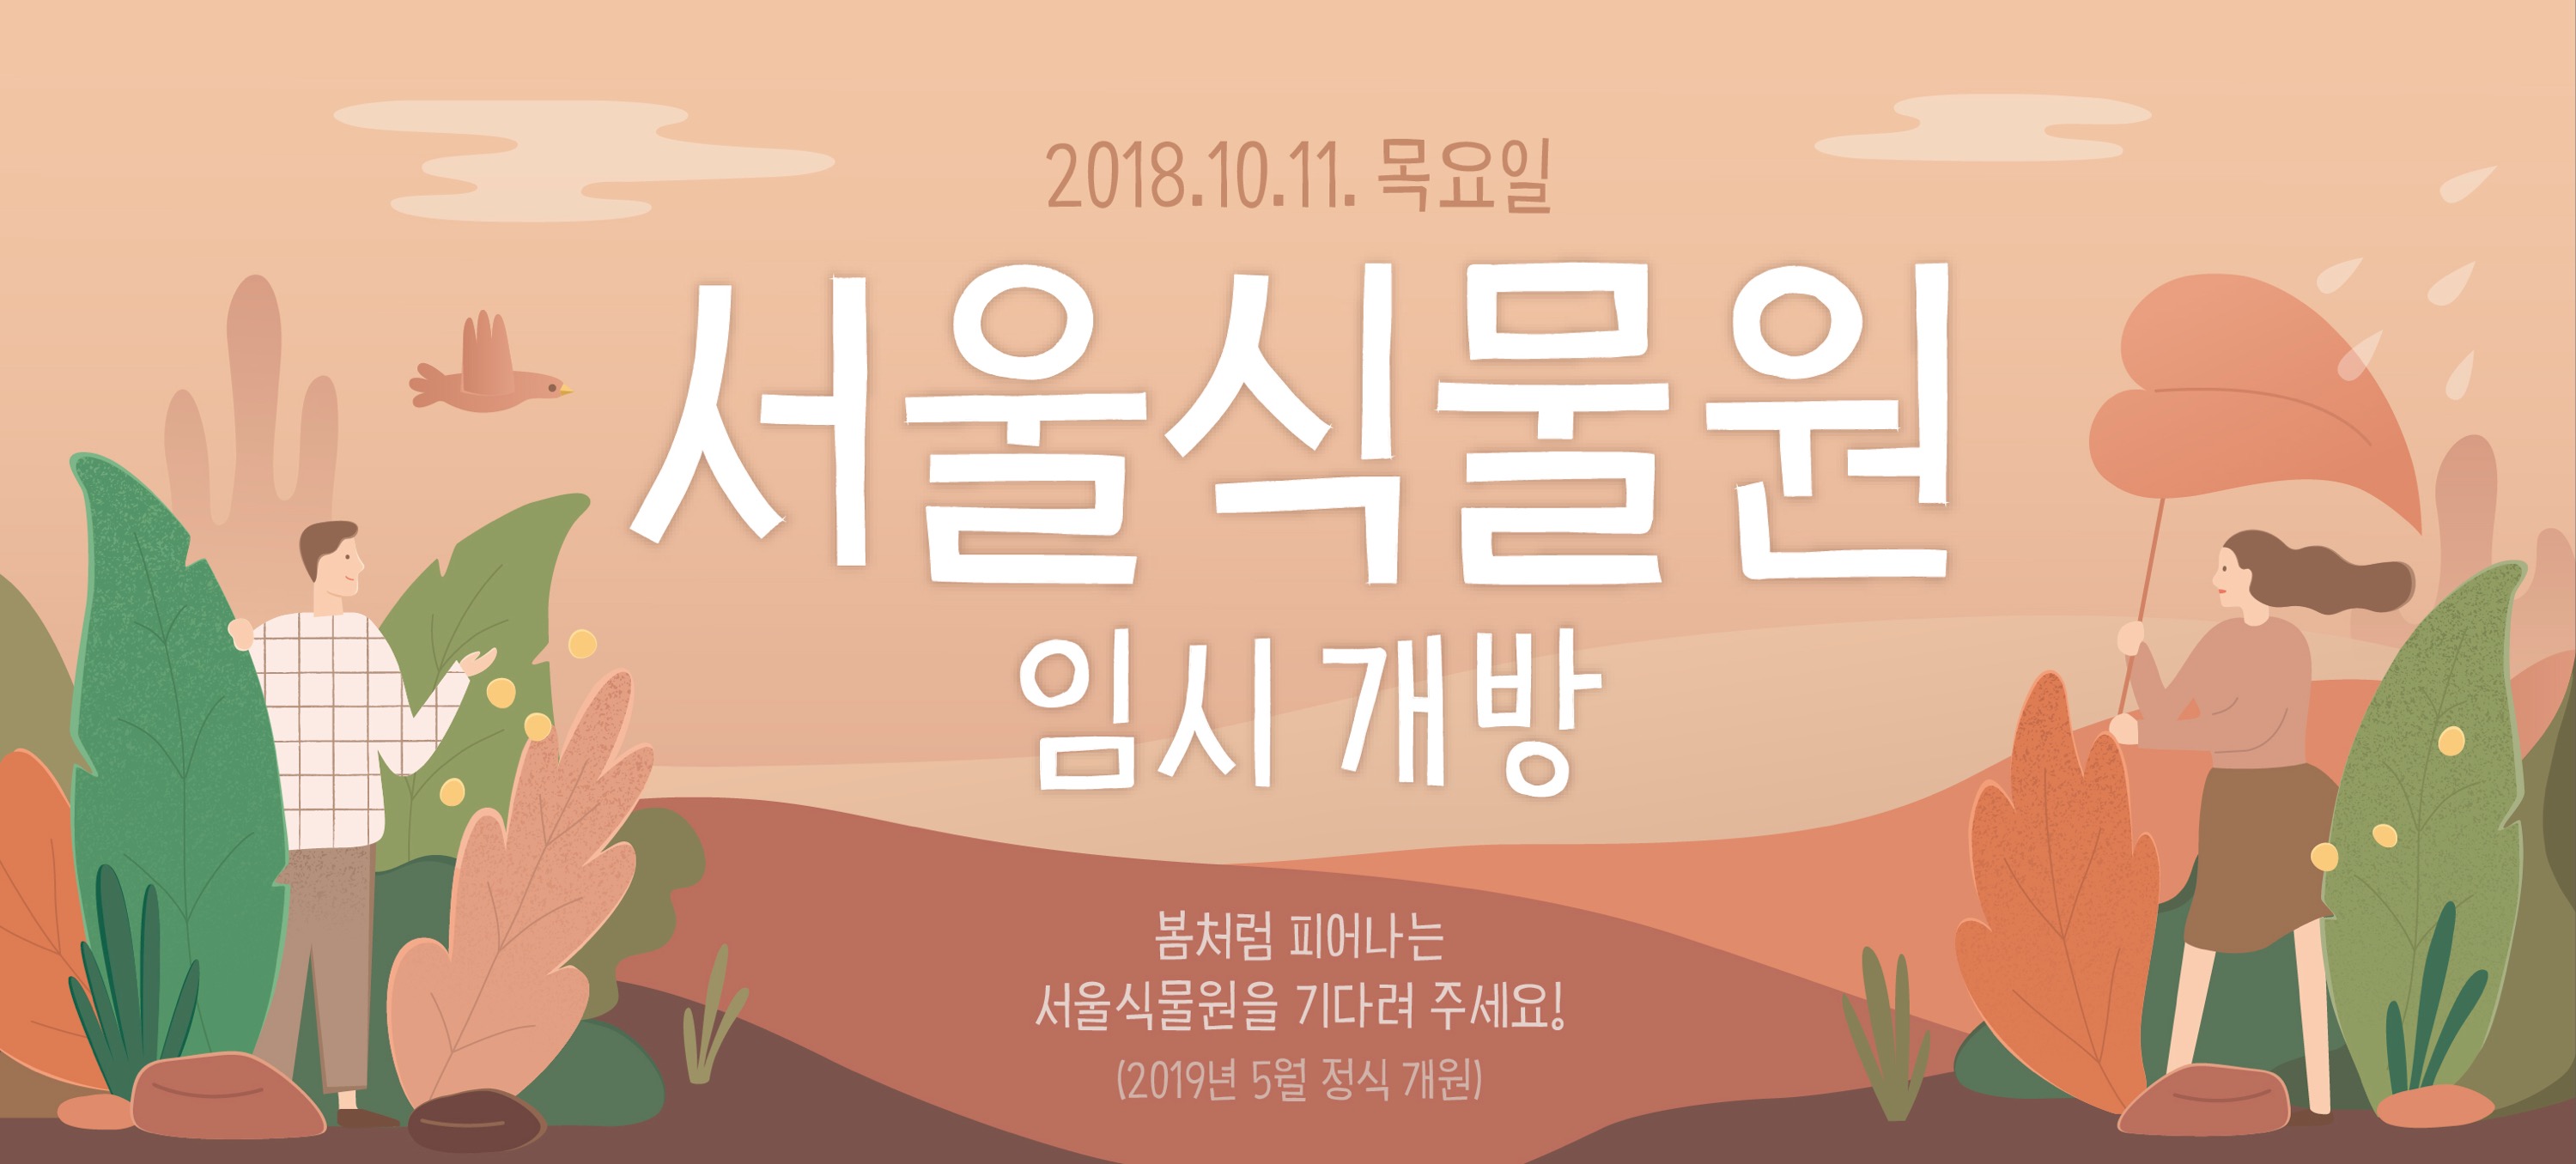 2018.10.11 목요일 서울식물원 임시개방 / 봄처럼 피어나는 서울식물원을 기다려주세요! (2019년 5월 정식 개원)